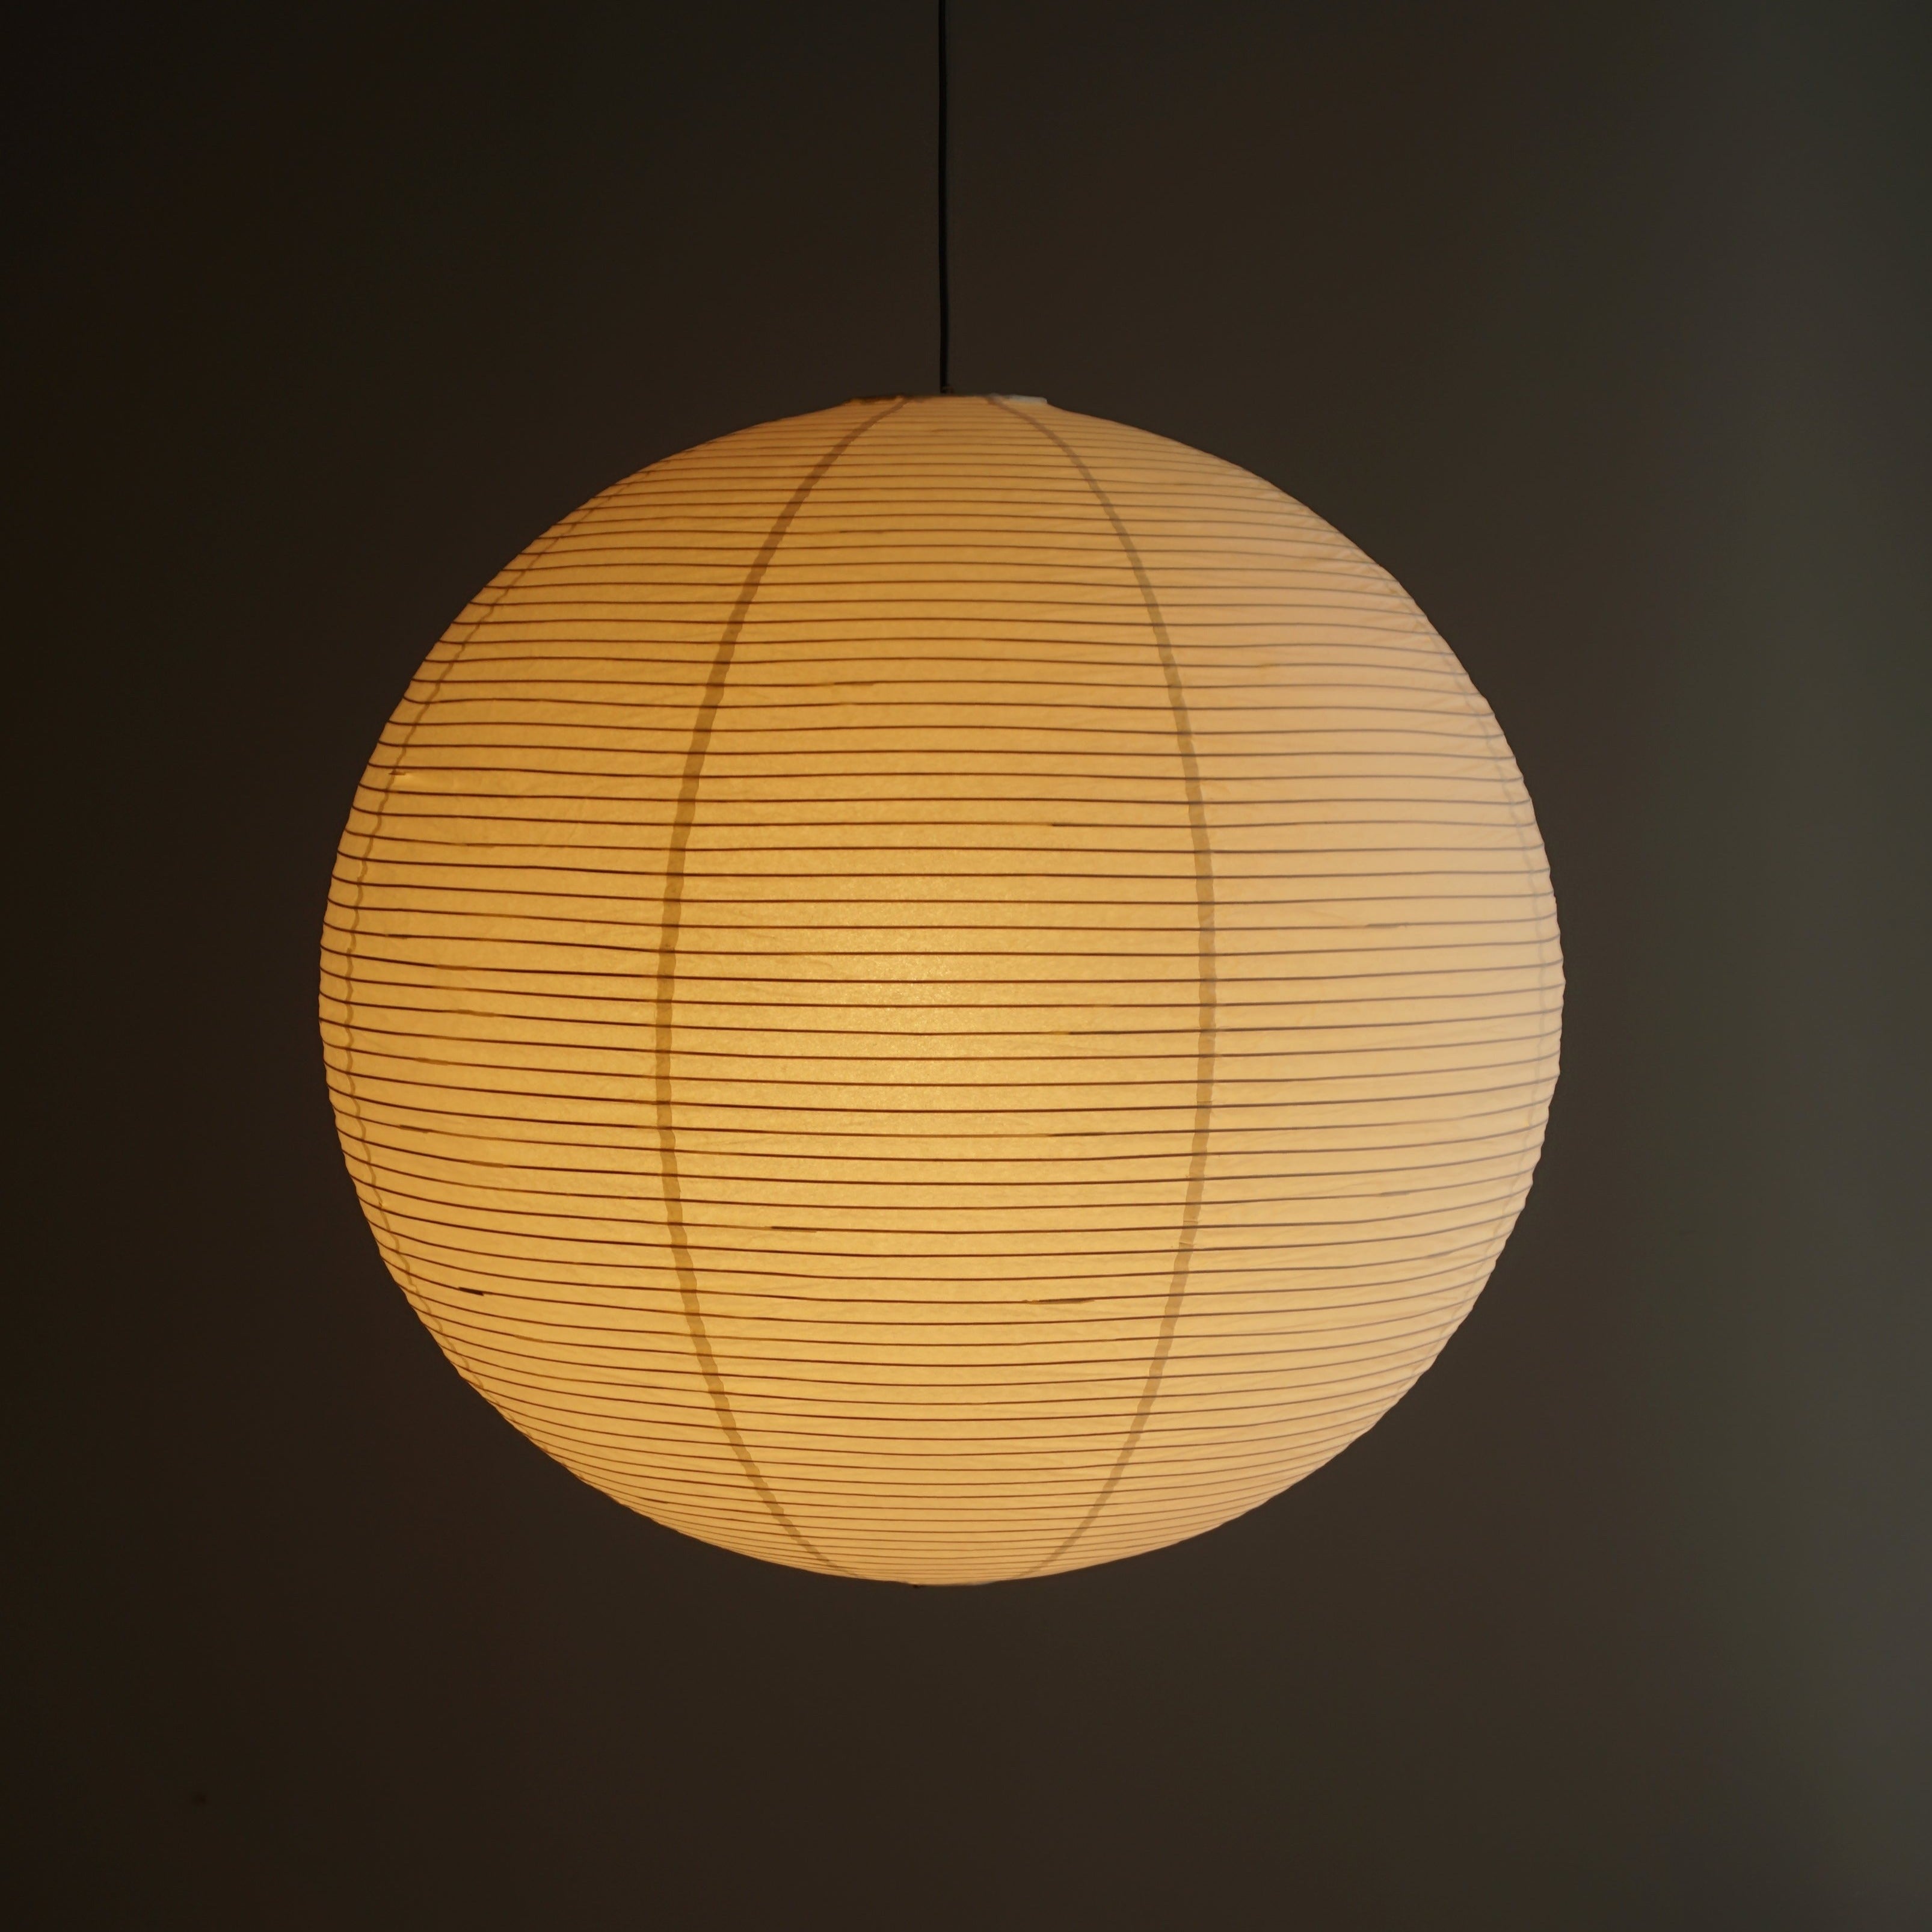 Nogy Noguchi Style Paper Lamp • Akari Lantern Lamp • Rice Paper Lamp •  Table Lamp • Japanese Lamp • Bedside Cool Lamp • Off White Paper Lantern  (Upgraded Table Lamp) 